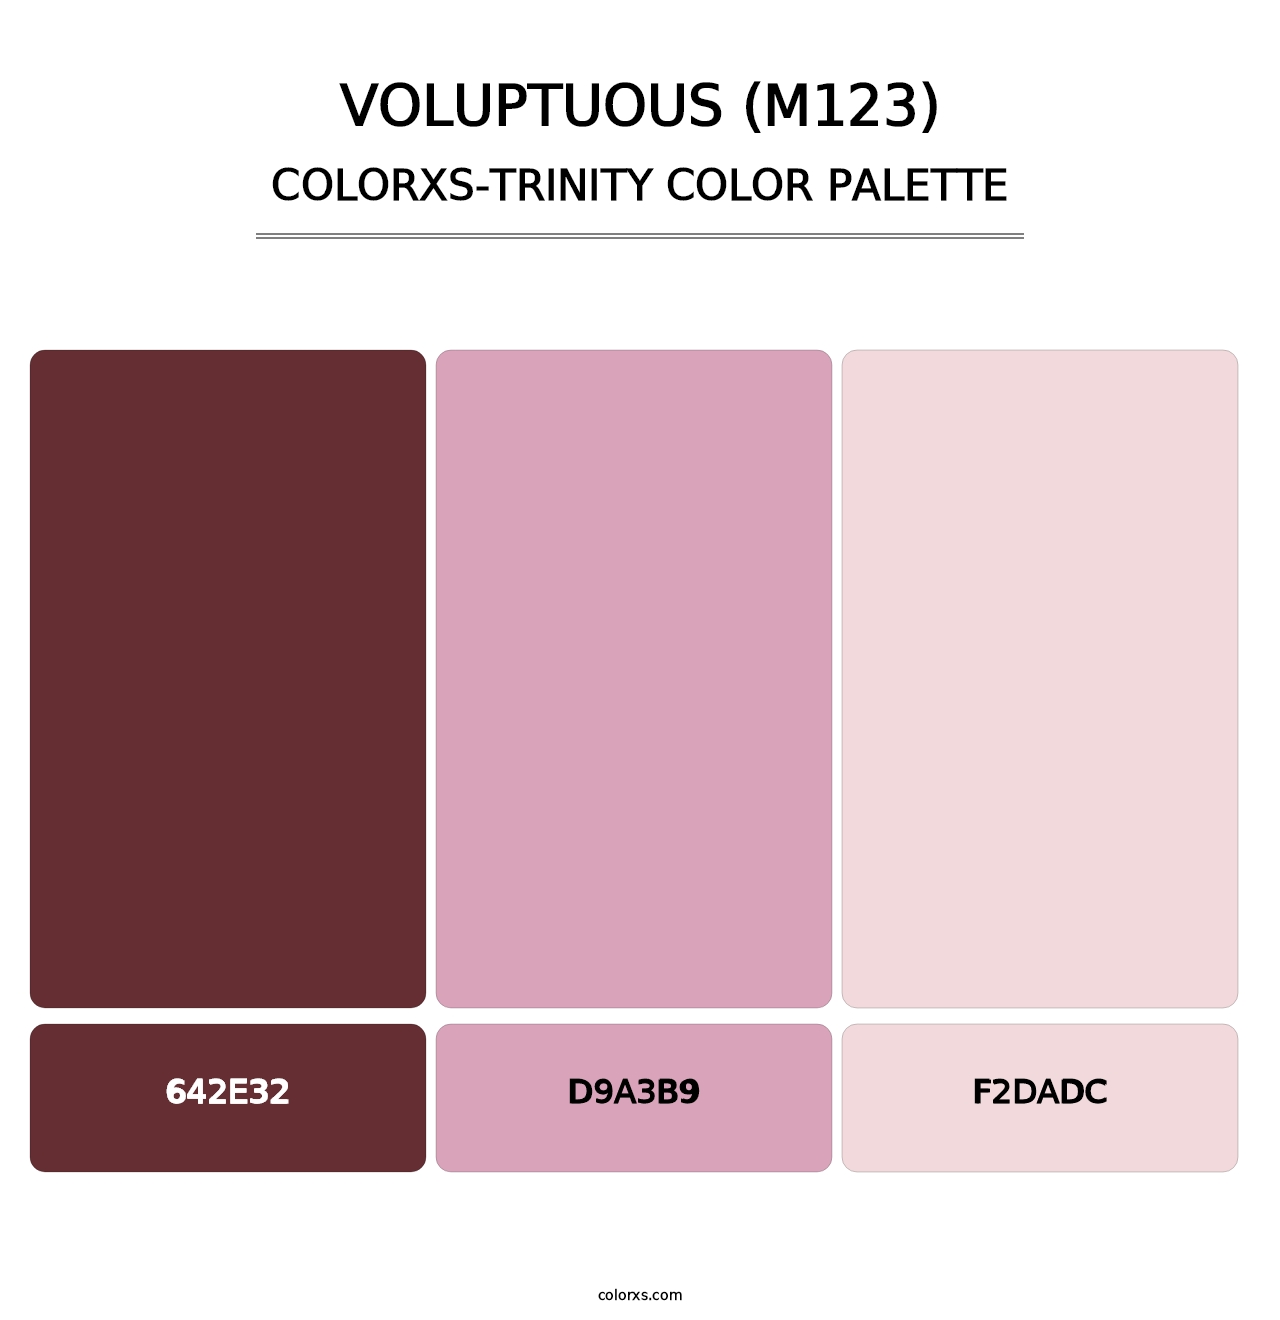 Voluptuous (M123) - Colorxs Trinity Palette